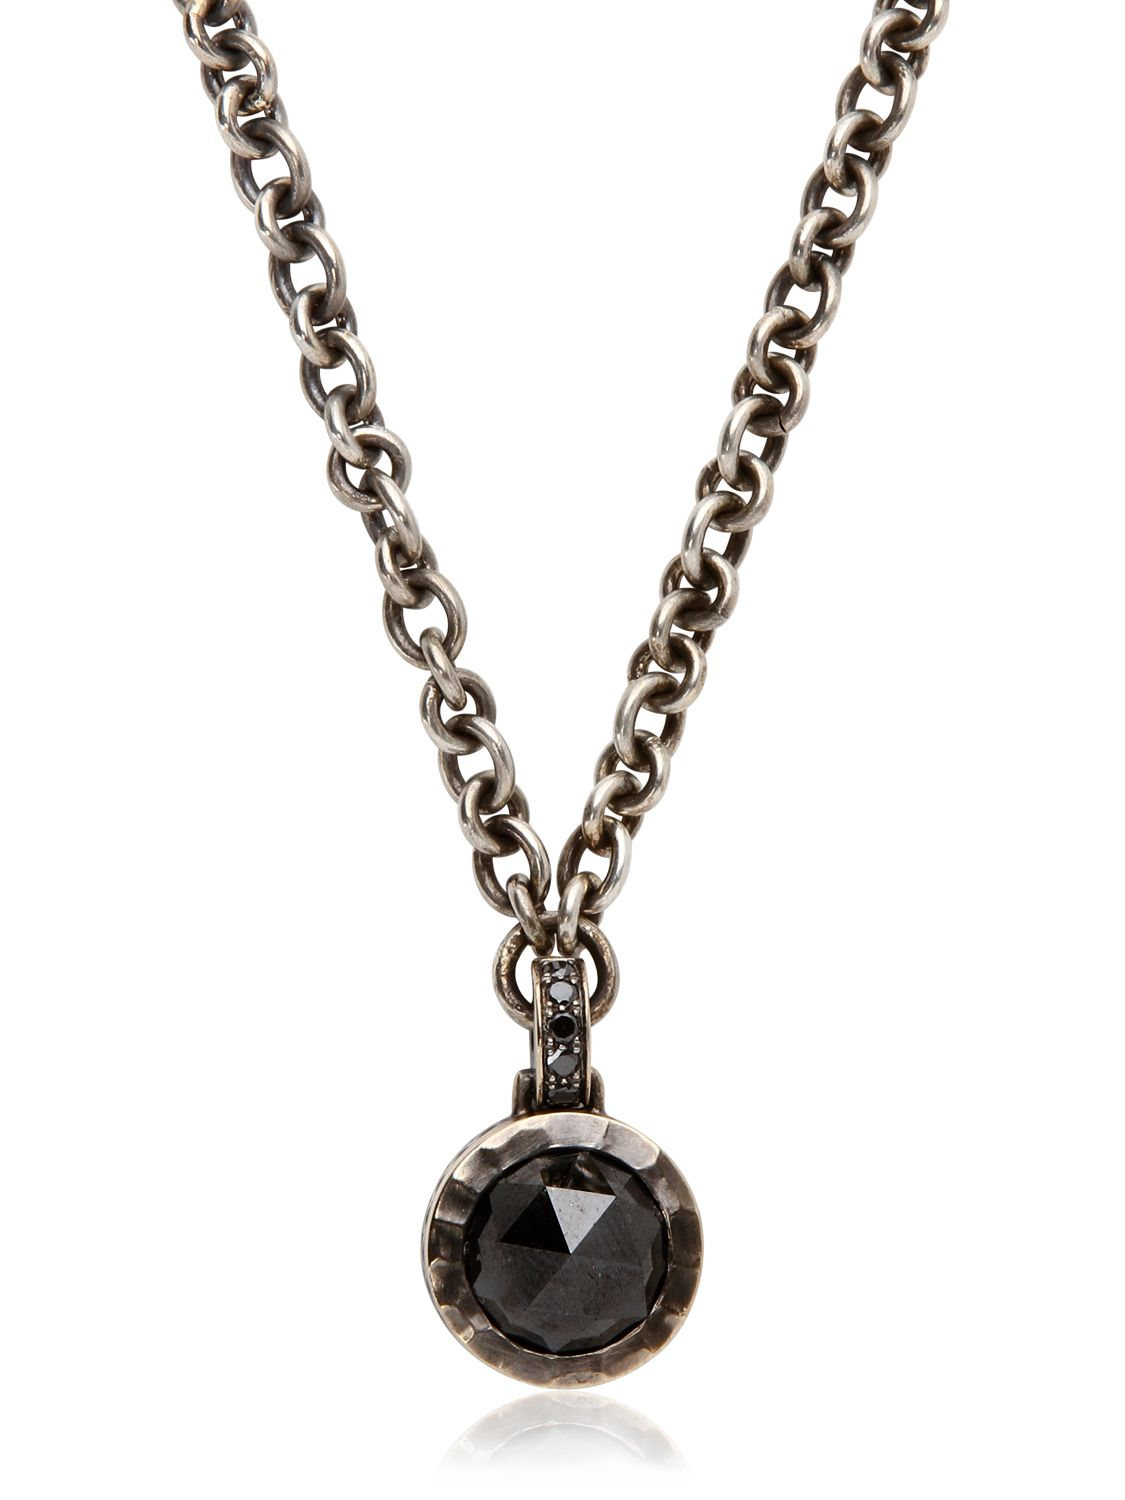 Lyst - Bonato Milano 1960 Black Diamond Necklace in Black for Men